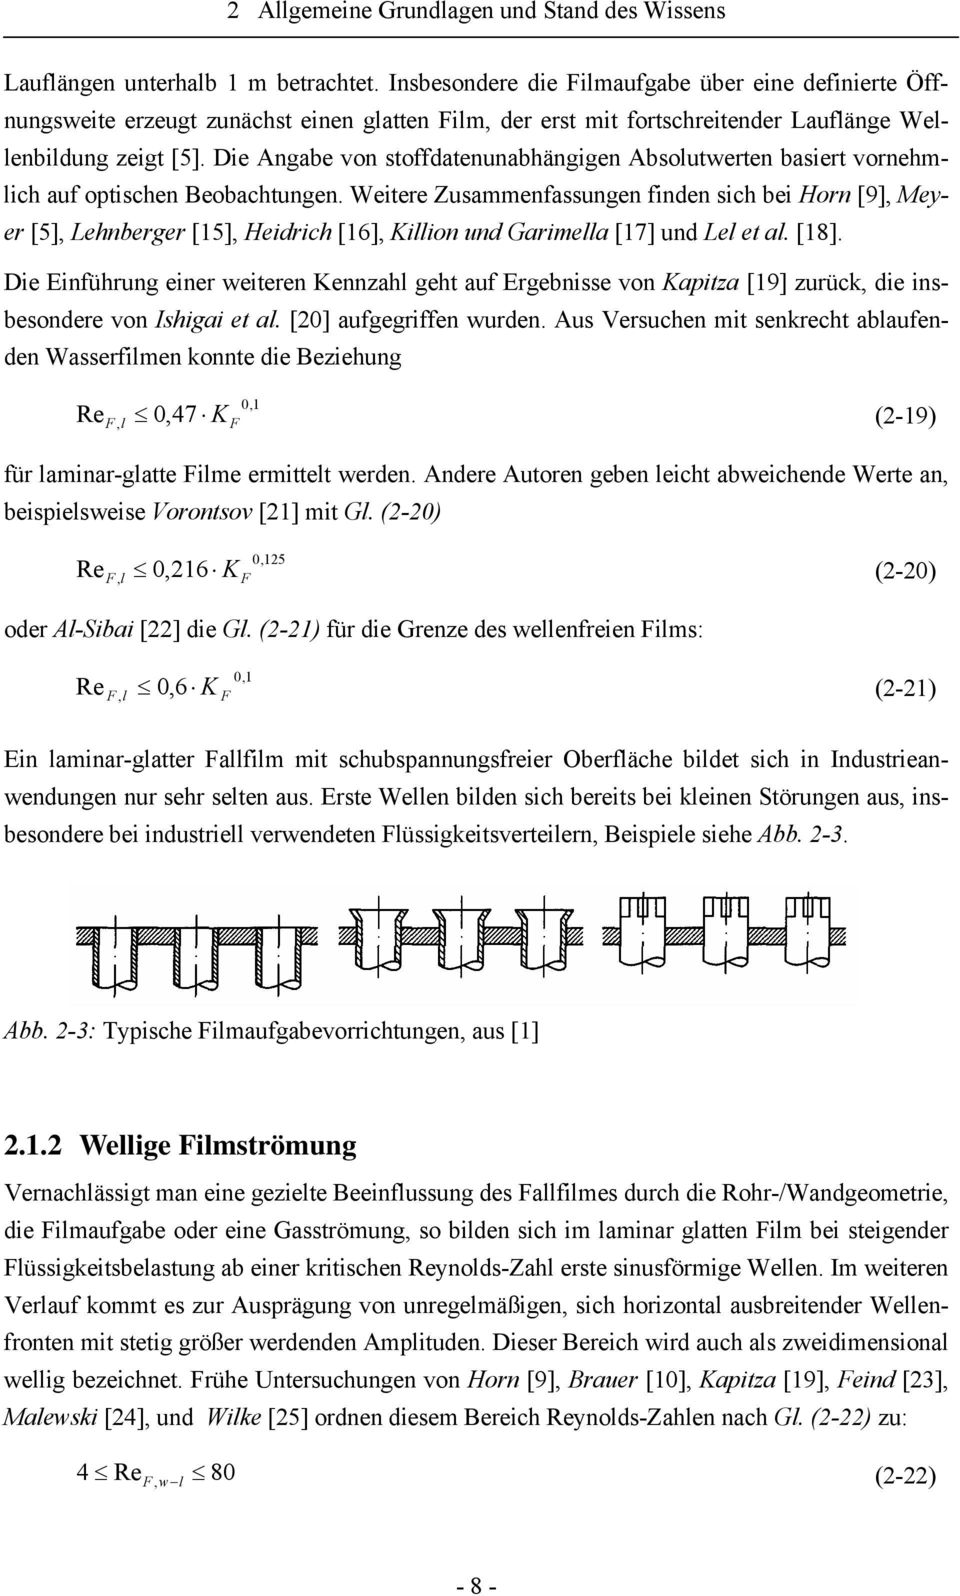 Weitere Zusammenfassungen finden sich bei Horn [9], Meyer [5], Lehnberger [15], Heidrich [16], Killion und Garimella [17] und Lel et al. [18].